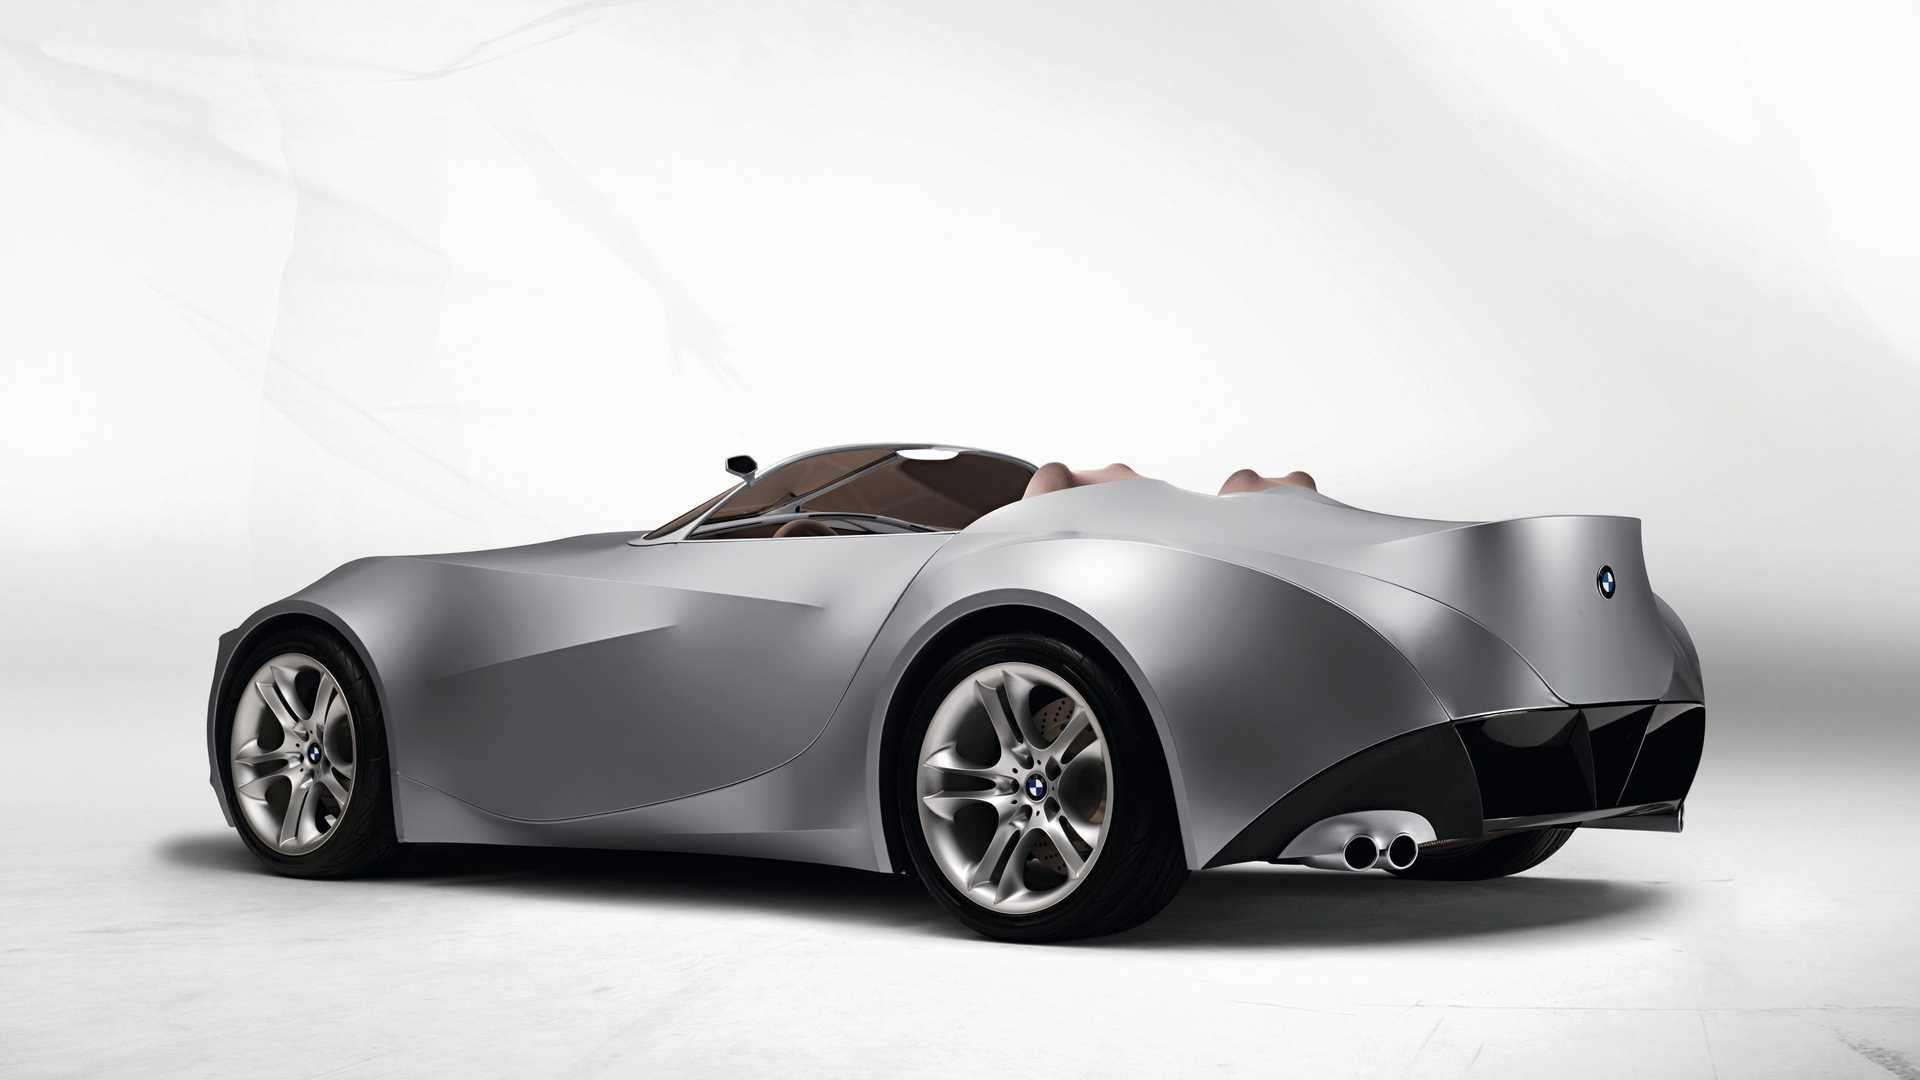 نمای سه چهارم عقب خودروی مفهومی روباز بی ام و گینا / BMW GINA concept convertible با بدنه پارچه ای 